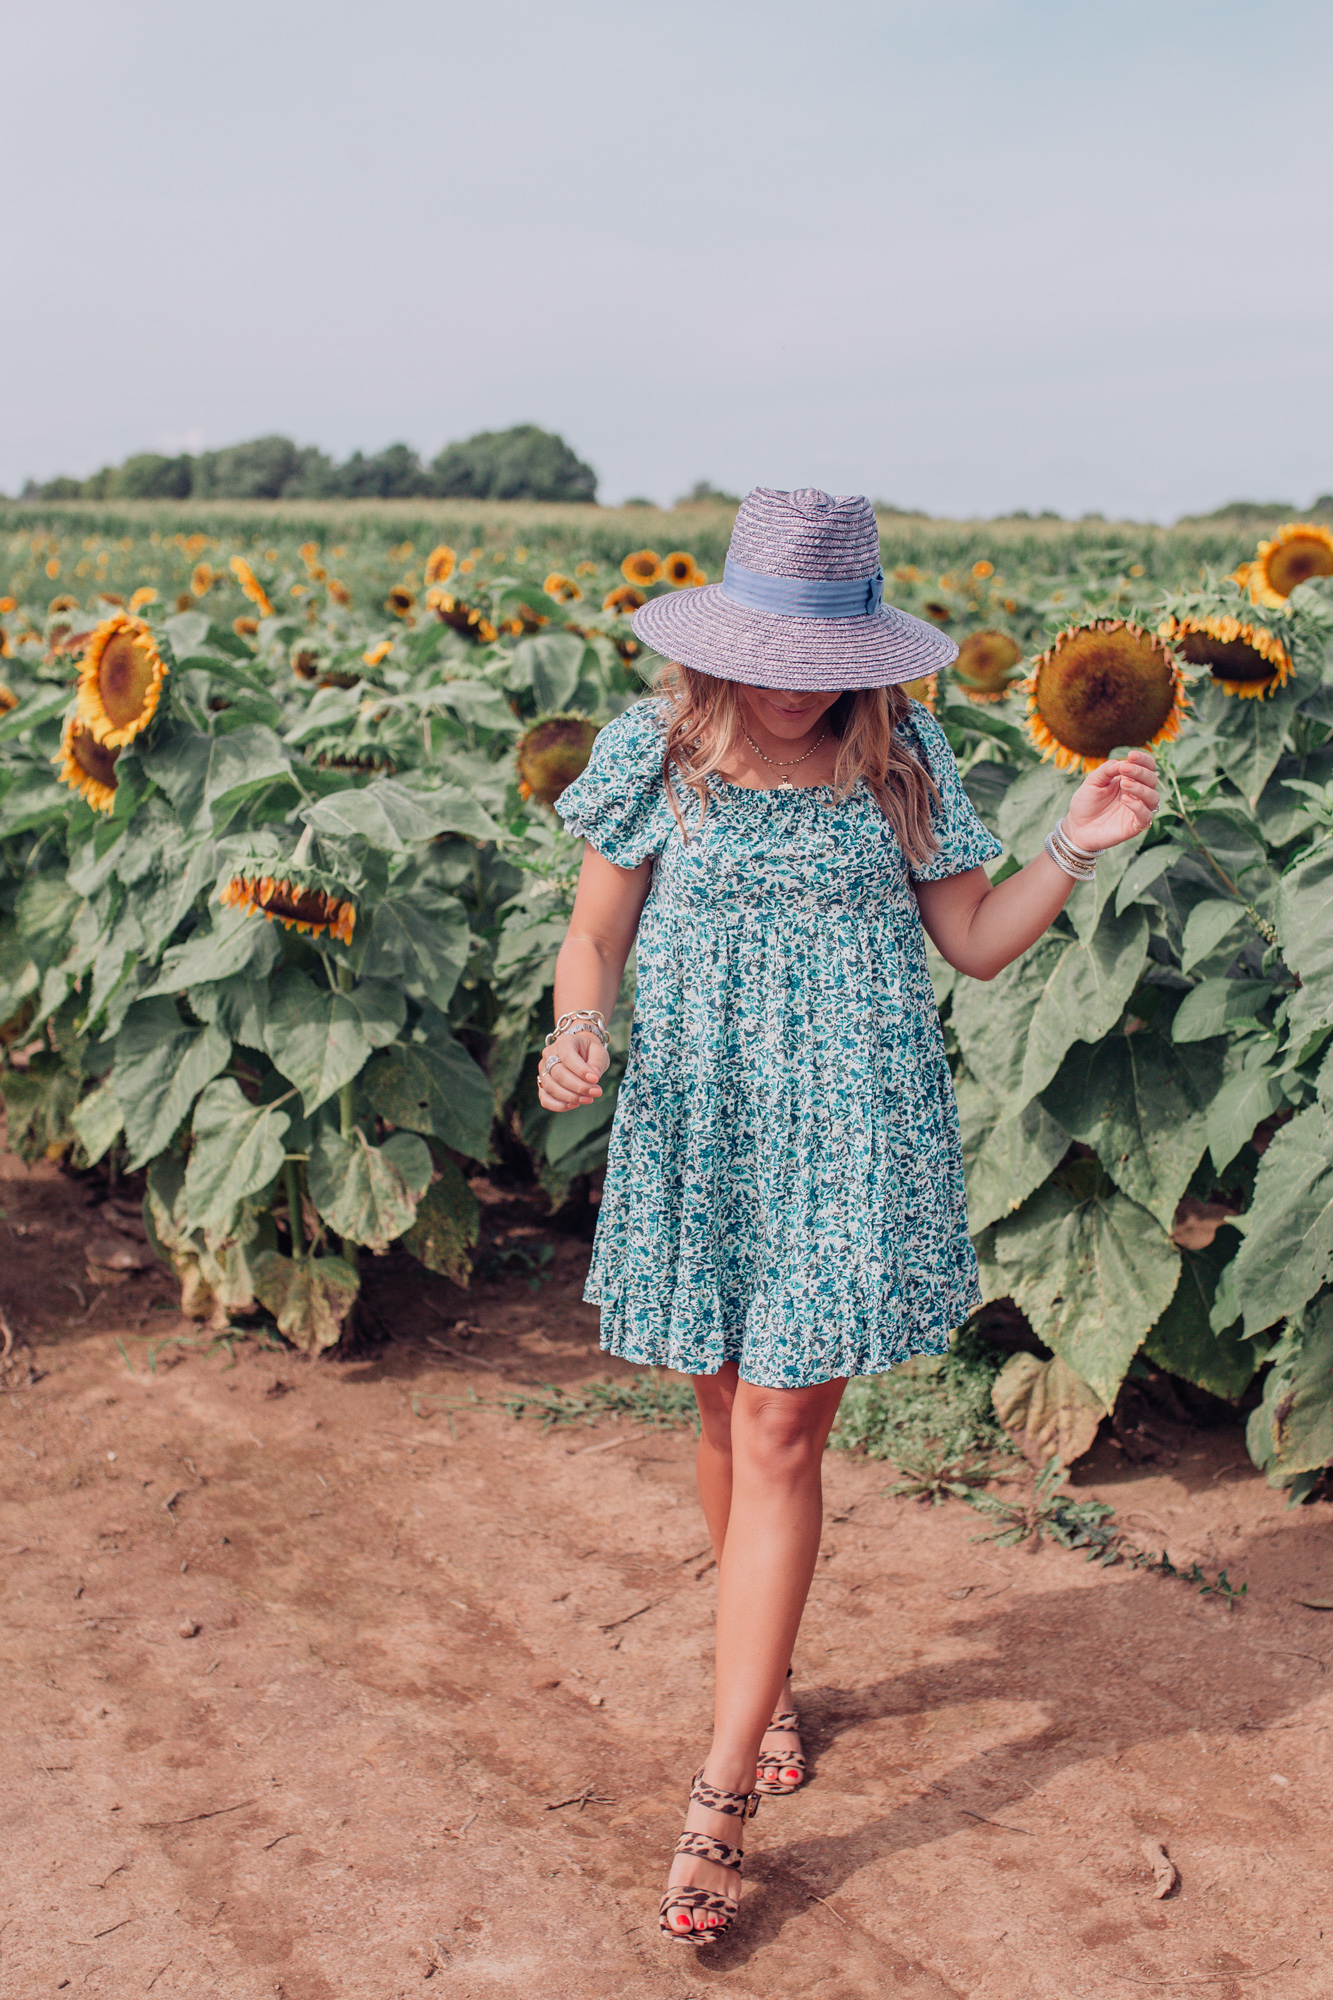 Kentucky Sunflower Field / Glitter & Gingham